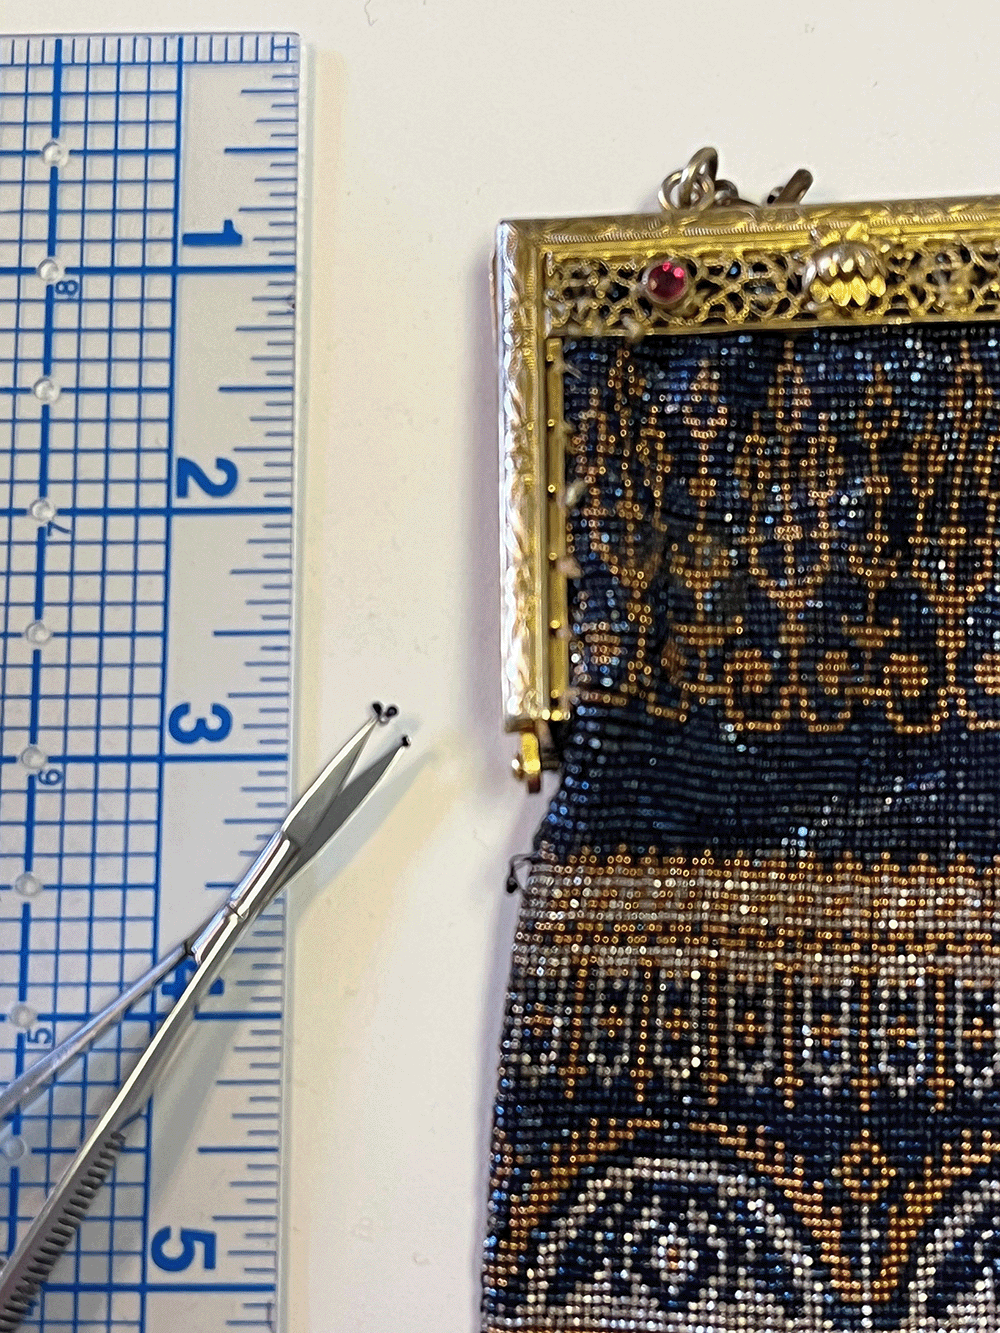 Beaded handbag, 1920s, France, metal, beads, silk; Gift of Mrs. Joseph Lutmer, 1968.484